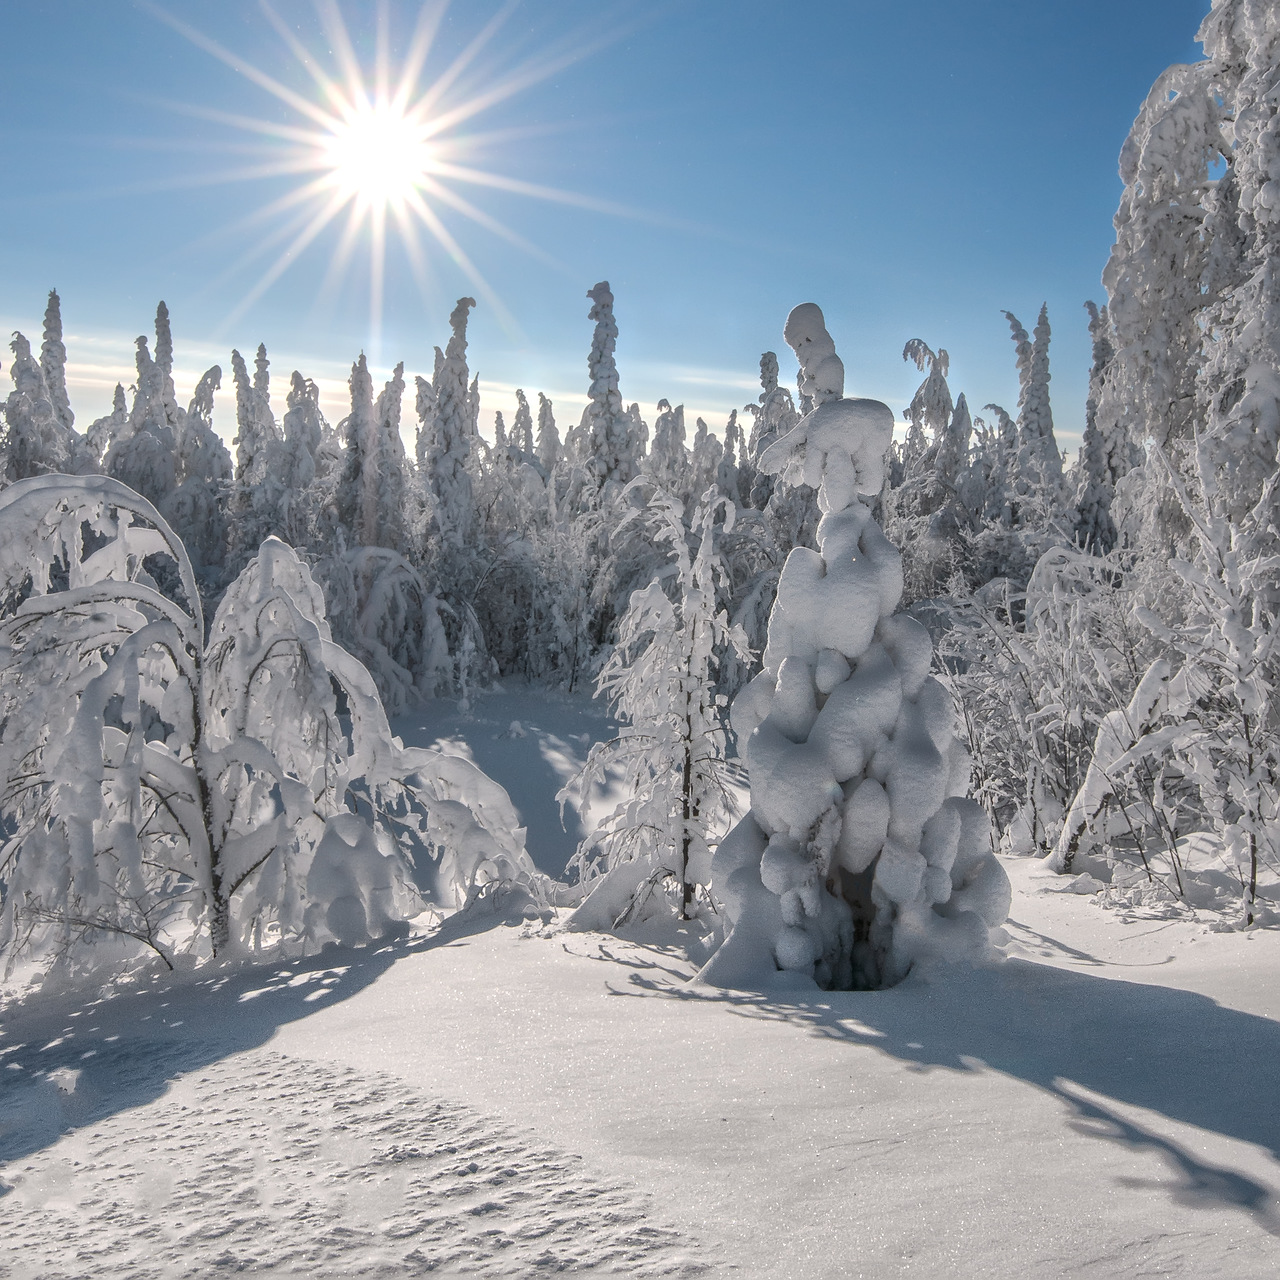 Fotos d'hivern: El sol al bosc d'hivern